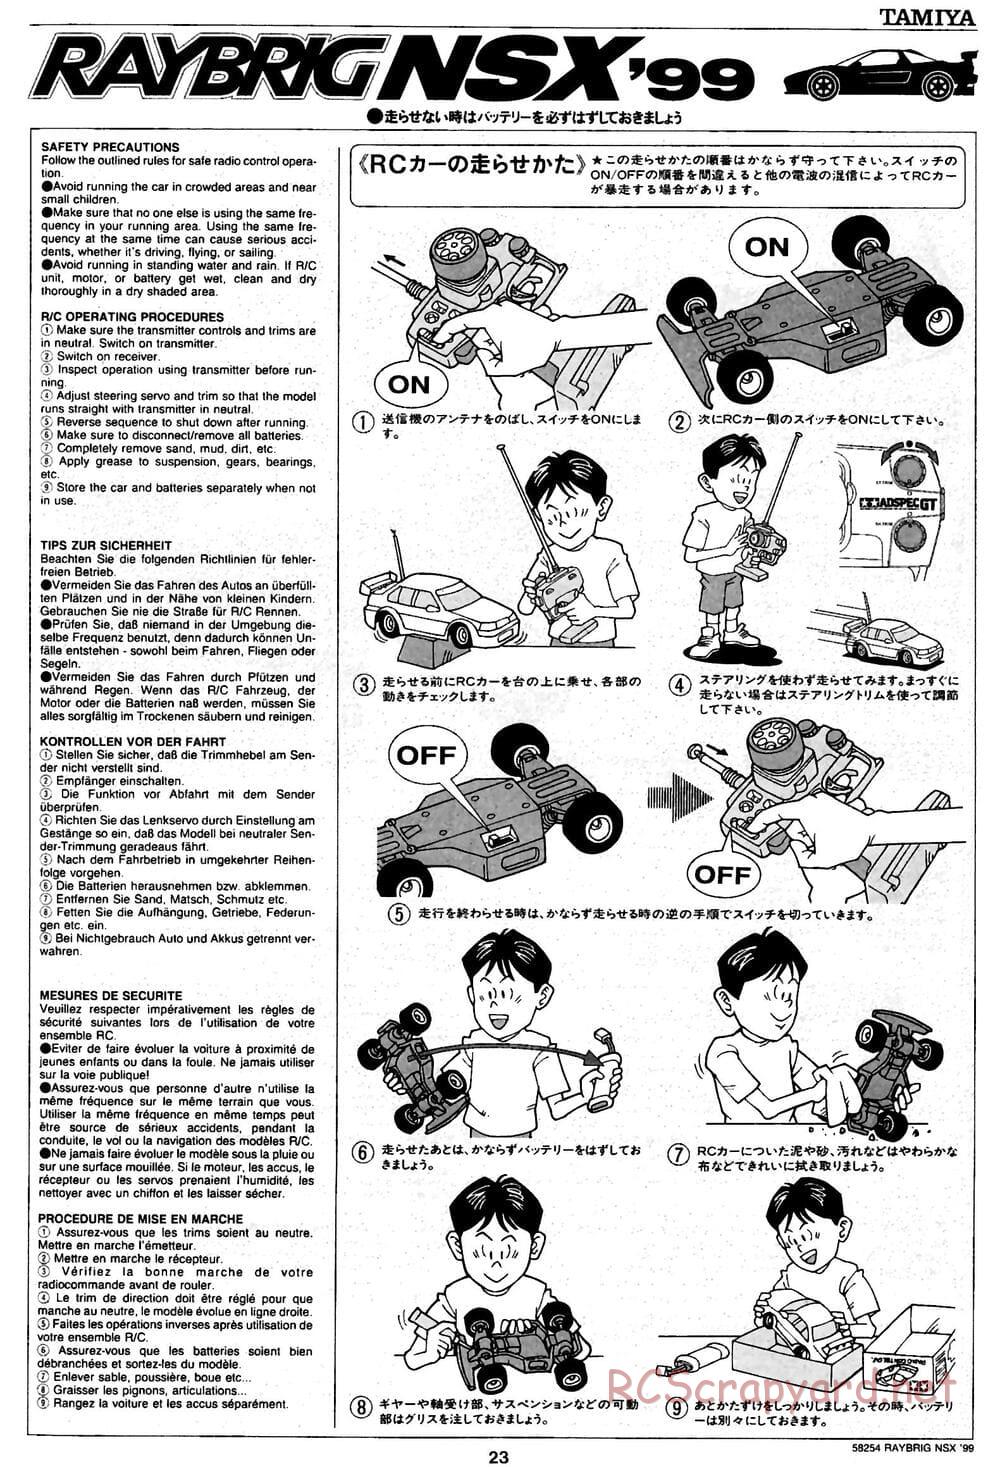 Tamiya - Raybrig NSX 99 - TA-03R Chassis - Manual - Page 23